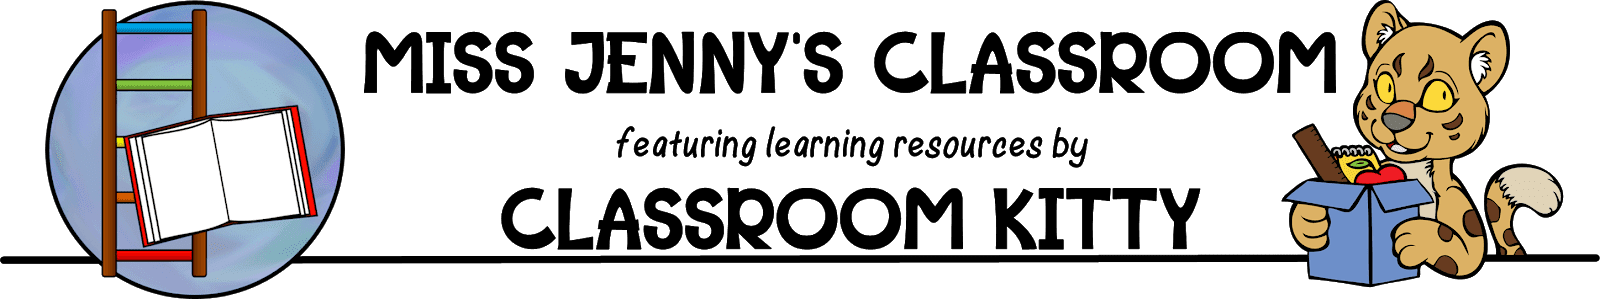 Miss Jenny's Classroom and Classroom Kitty